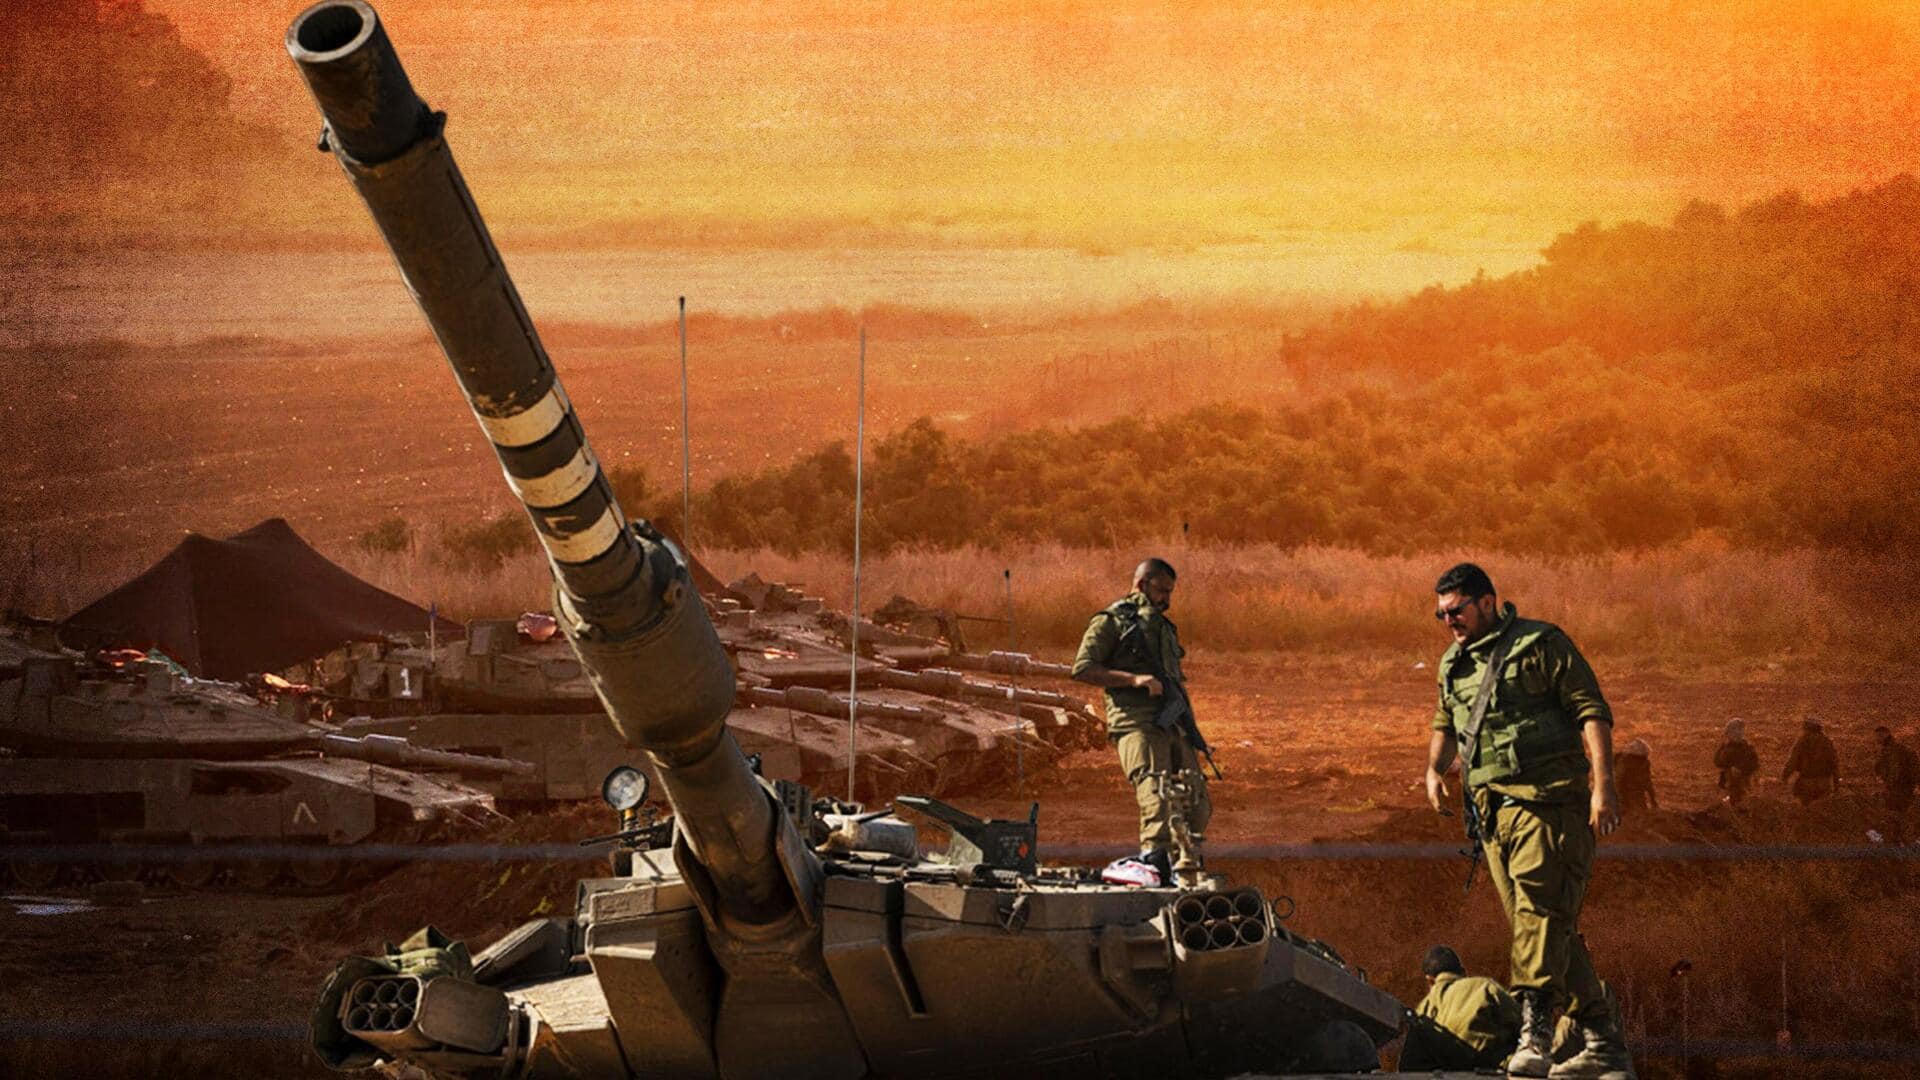 गाजा में घुसे इजरायल के टैंक, इजरायली सेना बोली- ये अगले पड़ाव की तैयारी